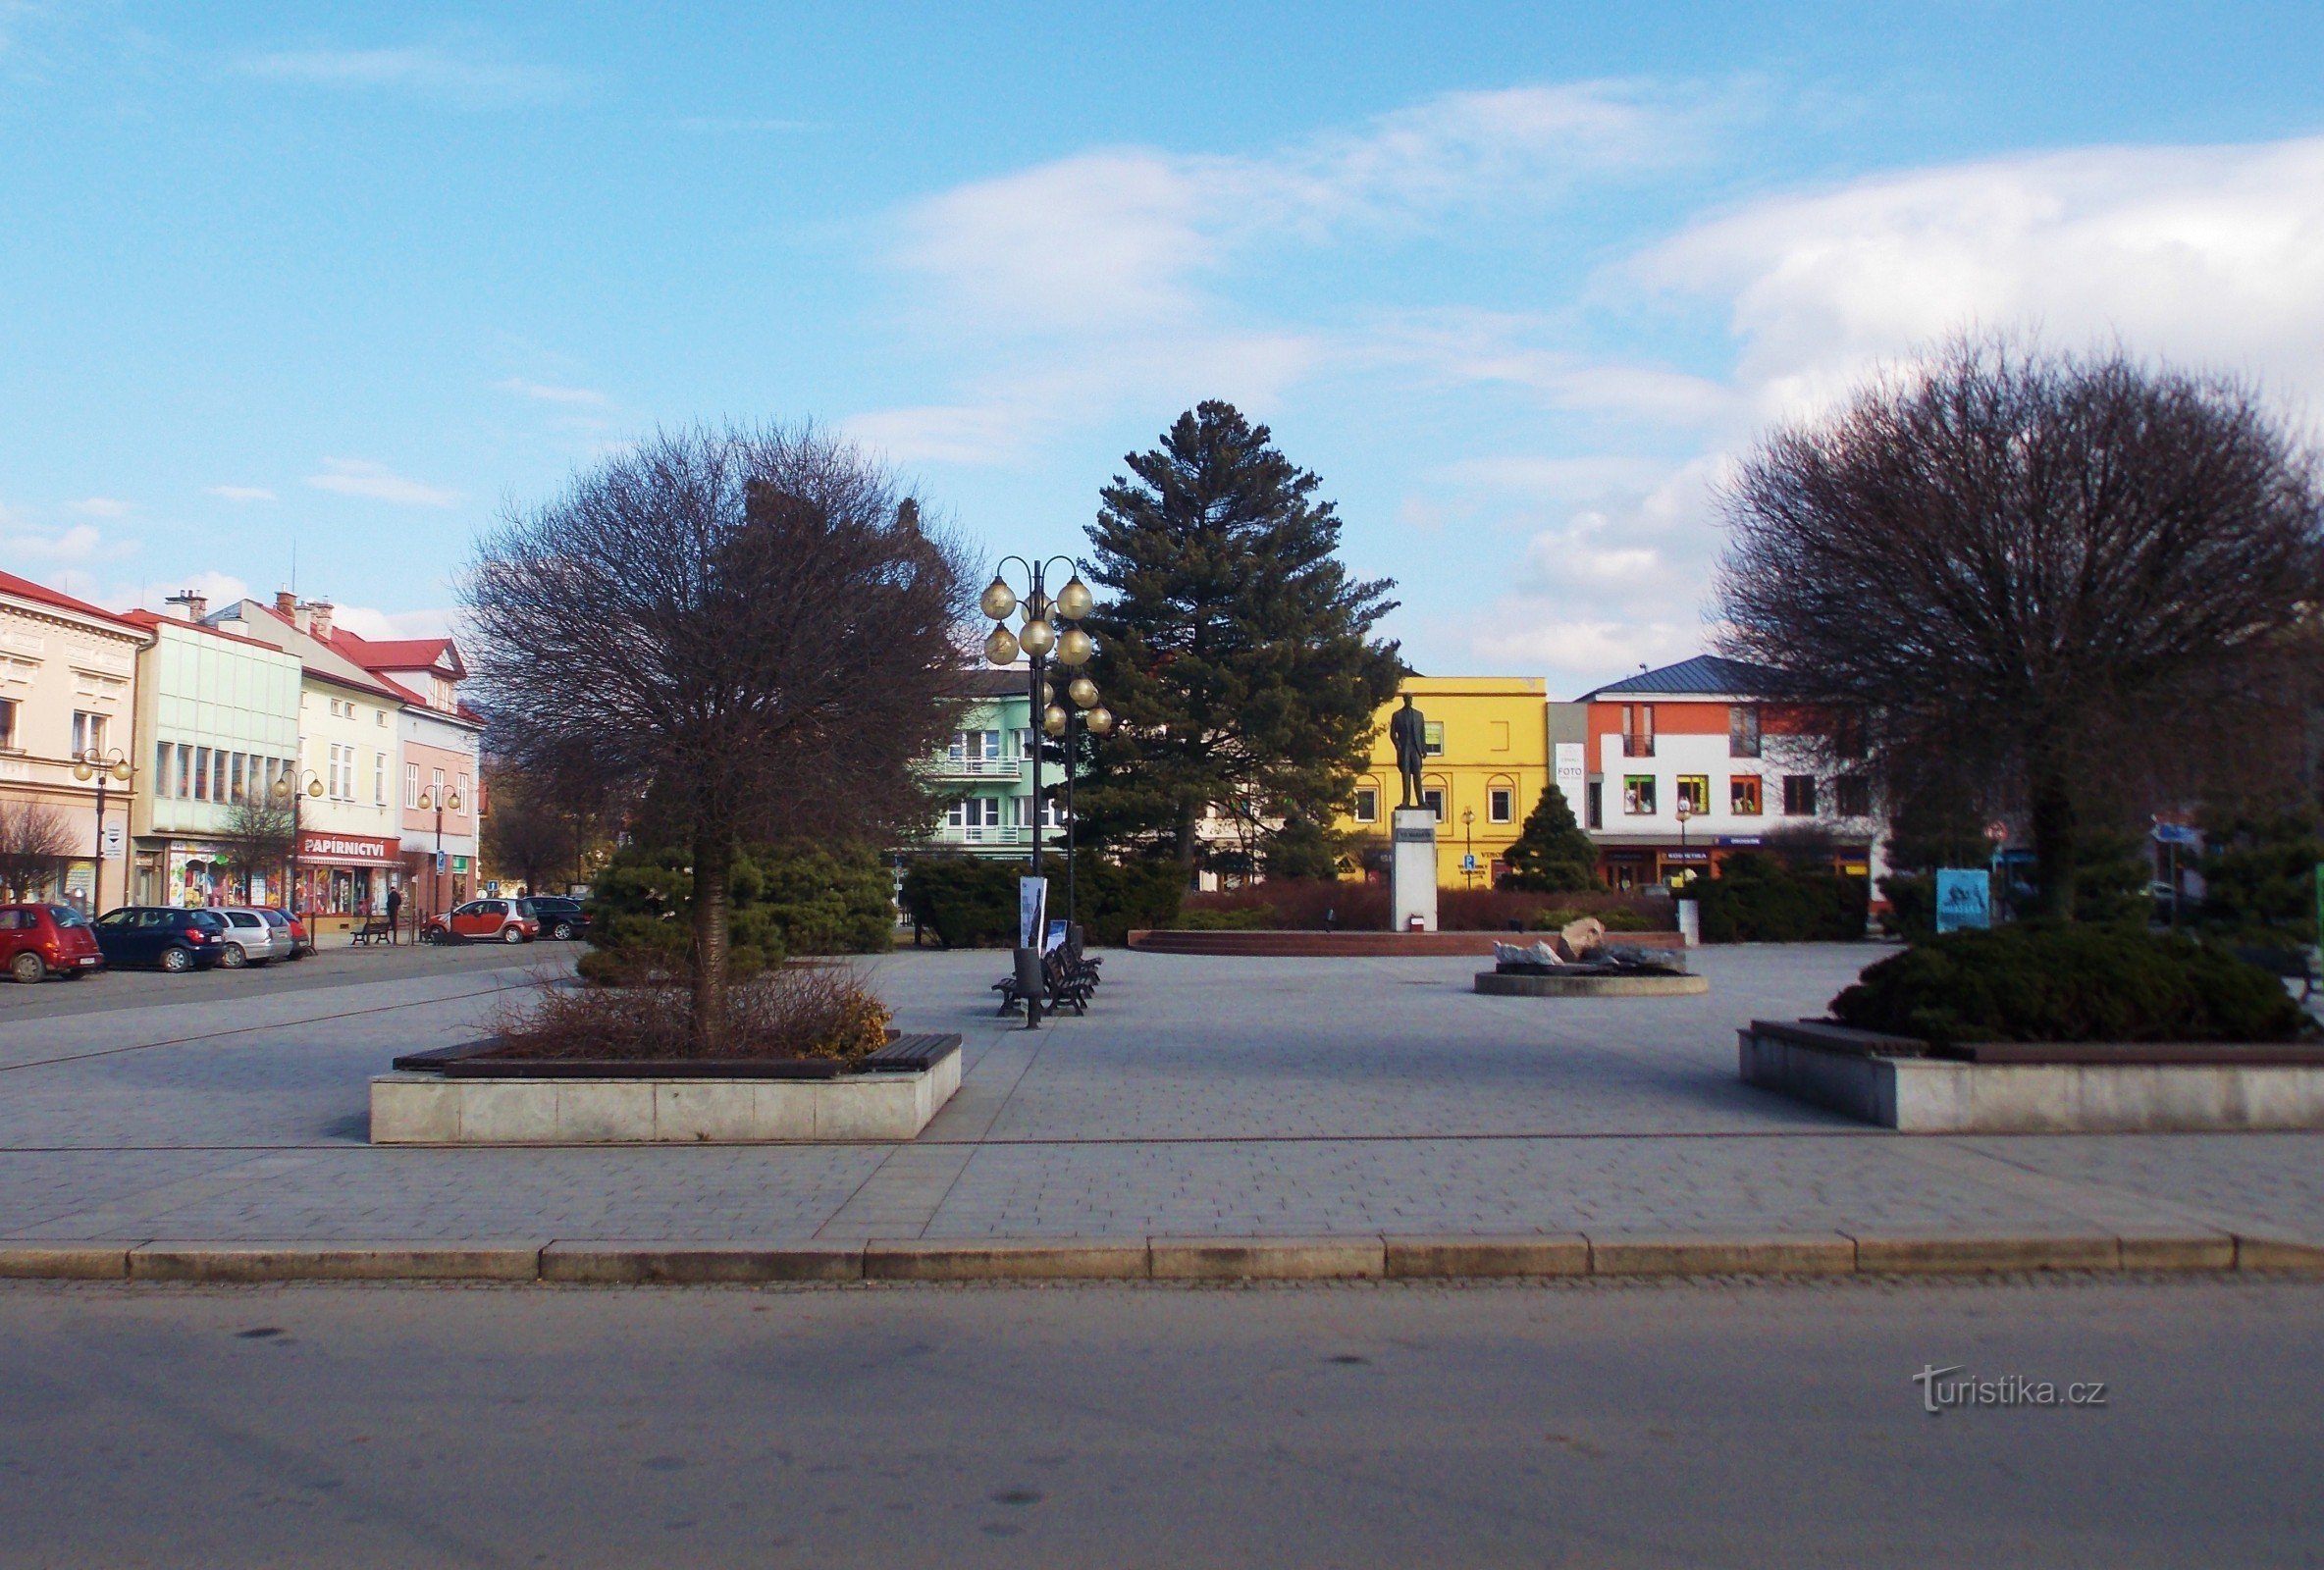 Quảng trường Rožnov